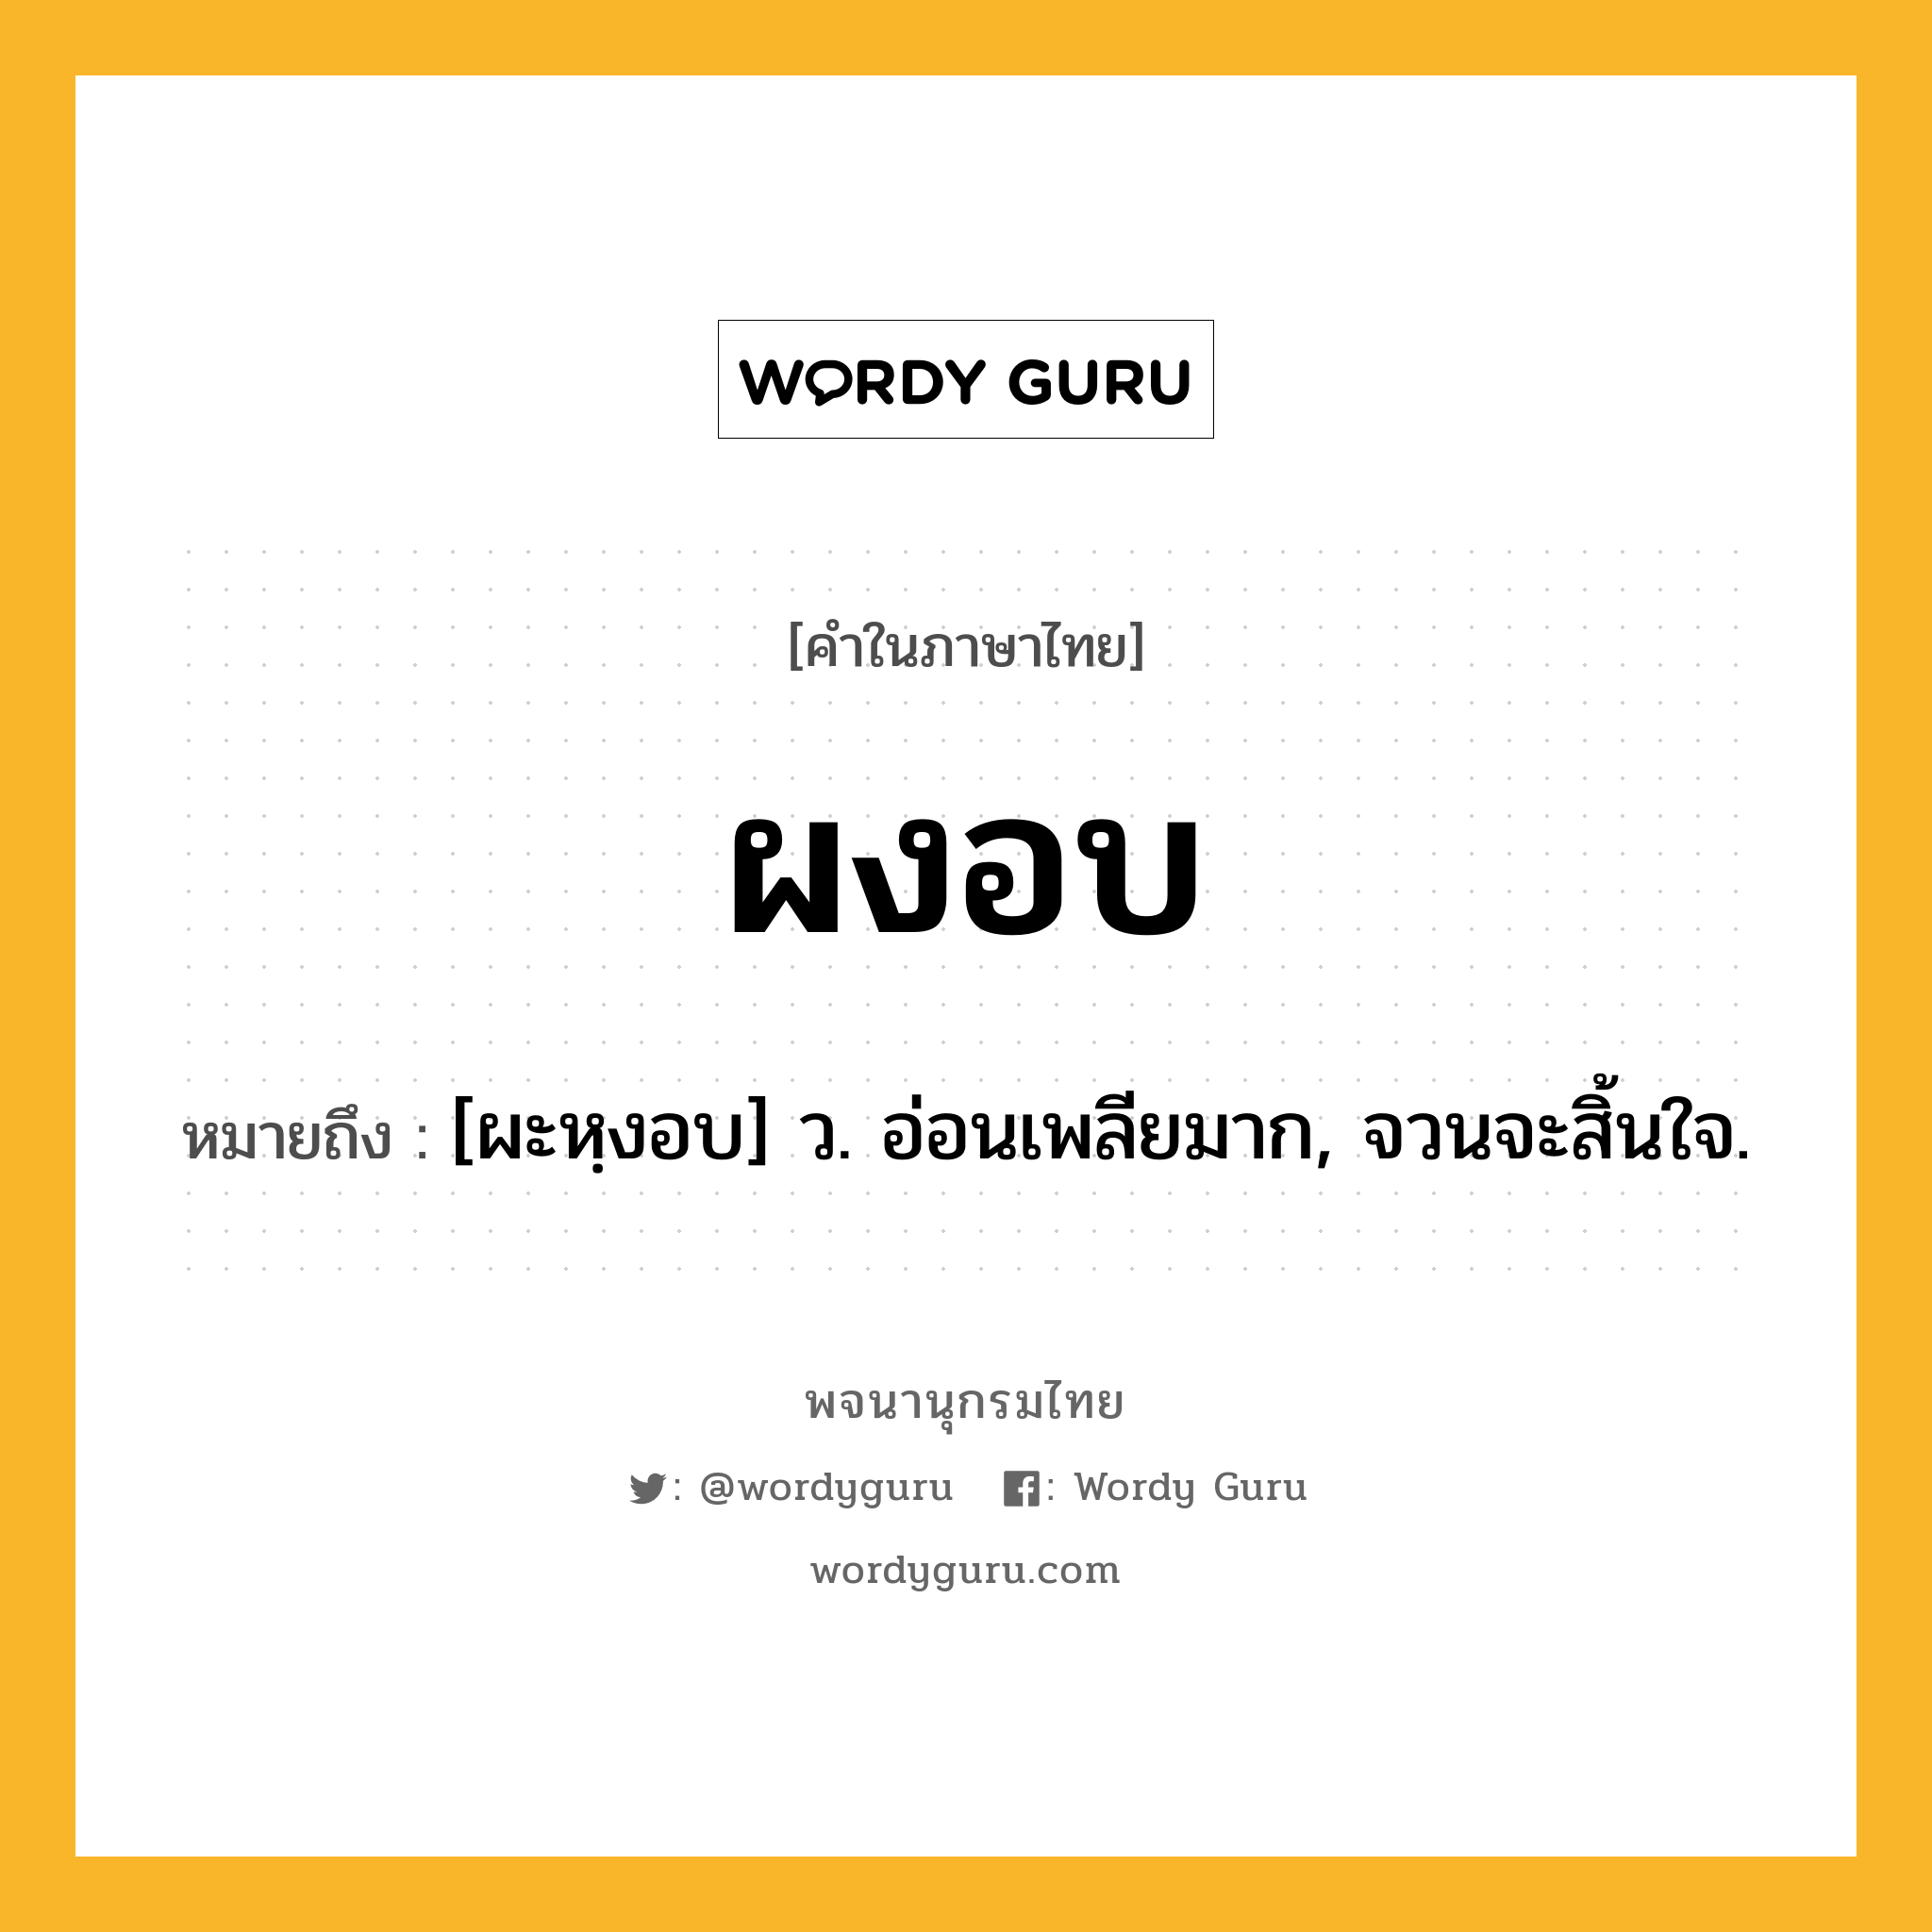 ผงอบ ความหมาย หมายถึงอะไร?, คำในภาษาไทย ผงอบ หมายถึง [ผะหฺงอบ] ว. อ่อนเพลียมาก, จวนจะสิ้นใจ.